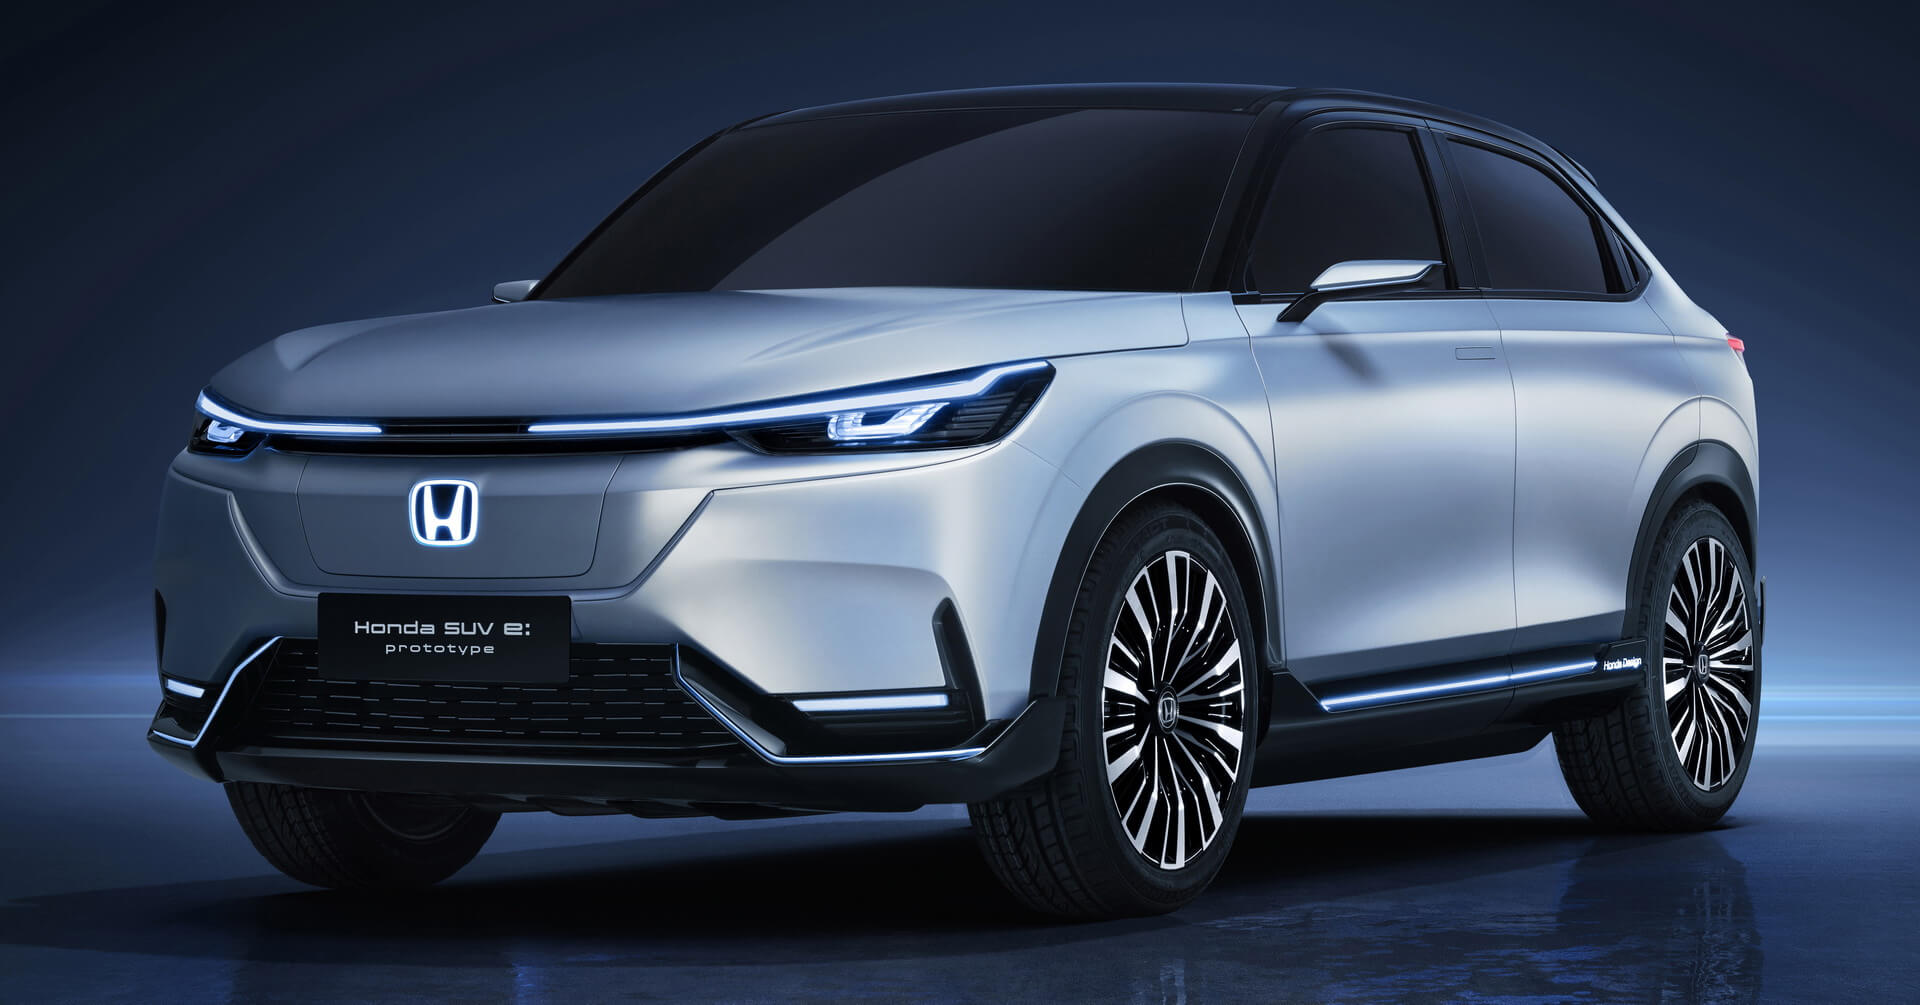 Honda SUV e:prototype: кроссовер с искусственным интеллектом выпустят в 2022 году